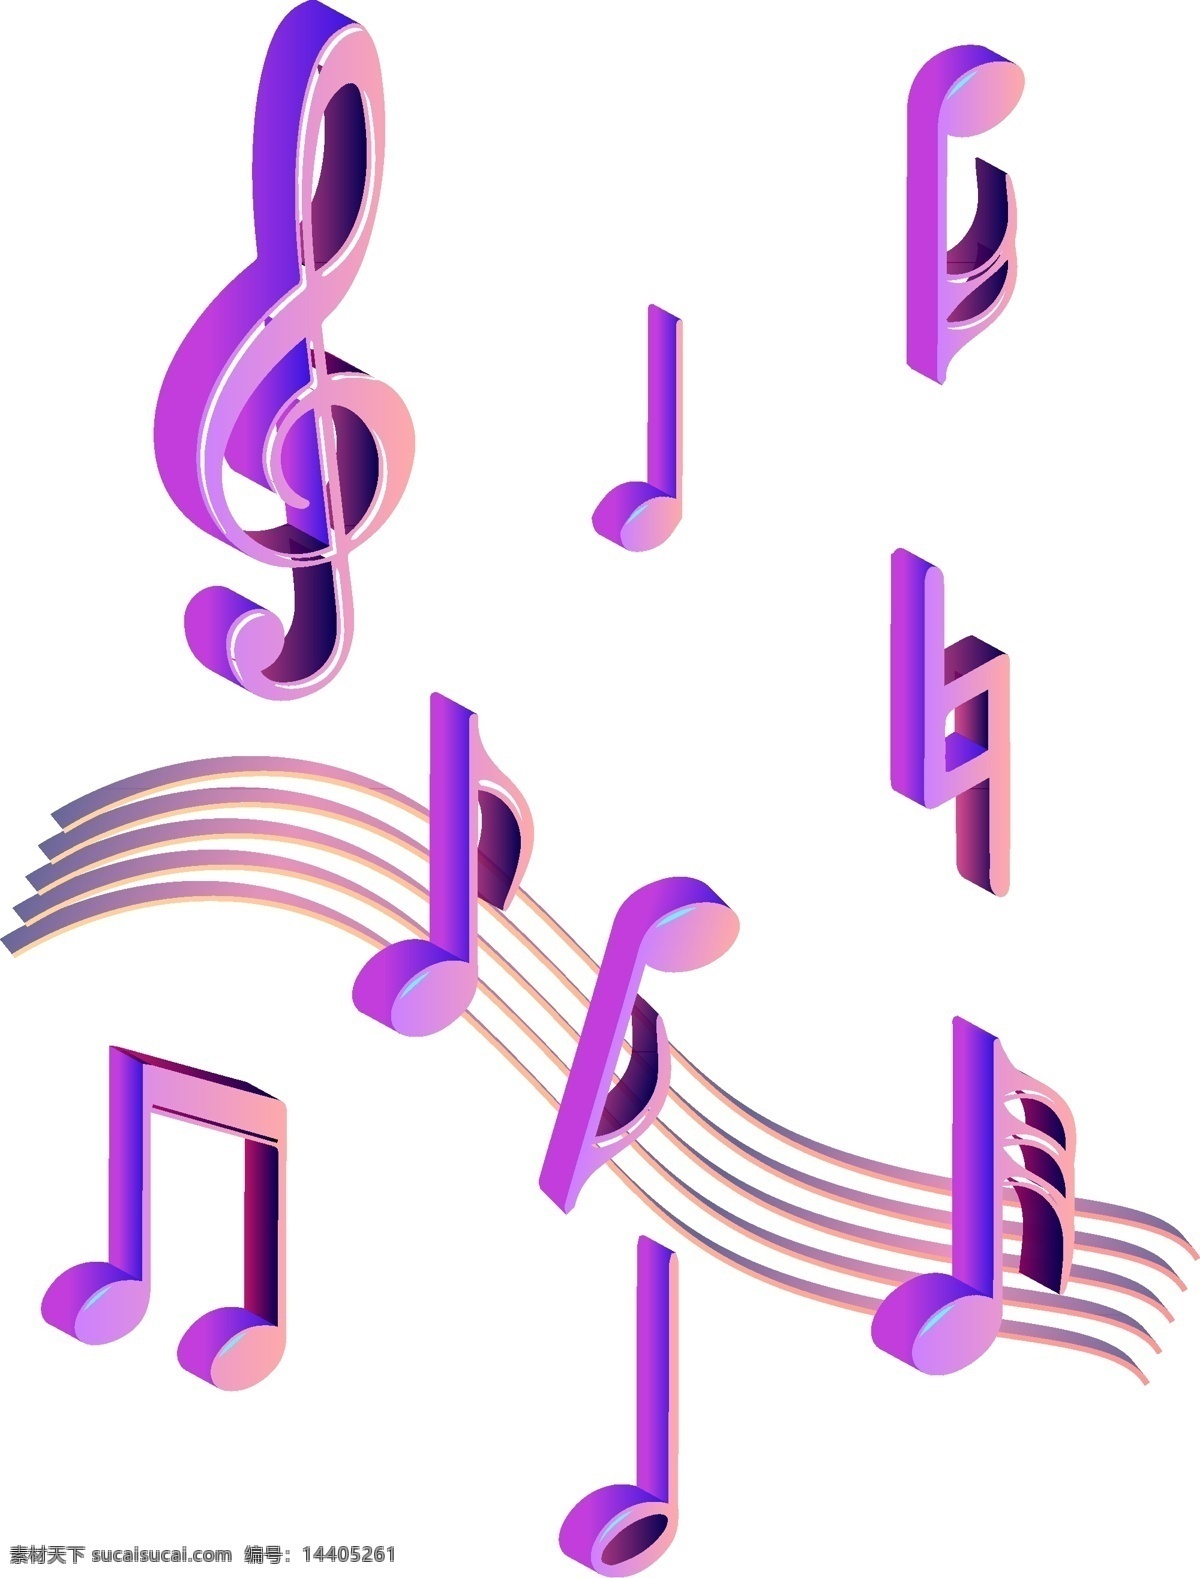 原创 d 音符 渐变 装饰 商用 元素 蓝色 紫色 炫彩 2.5d 可商用 设计元素